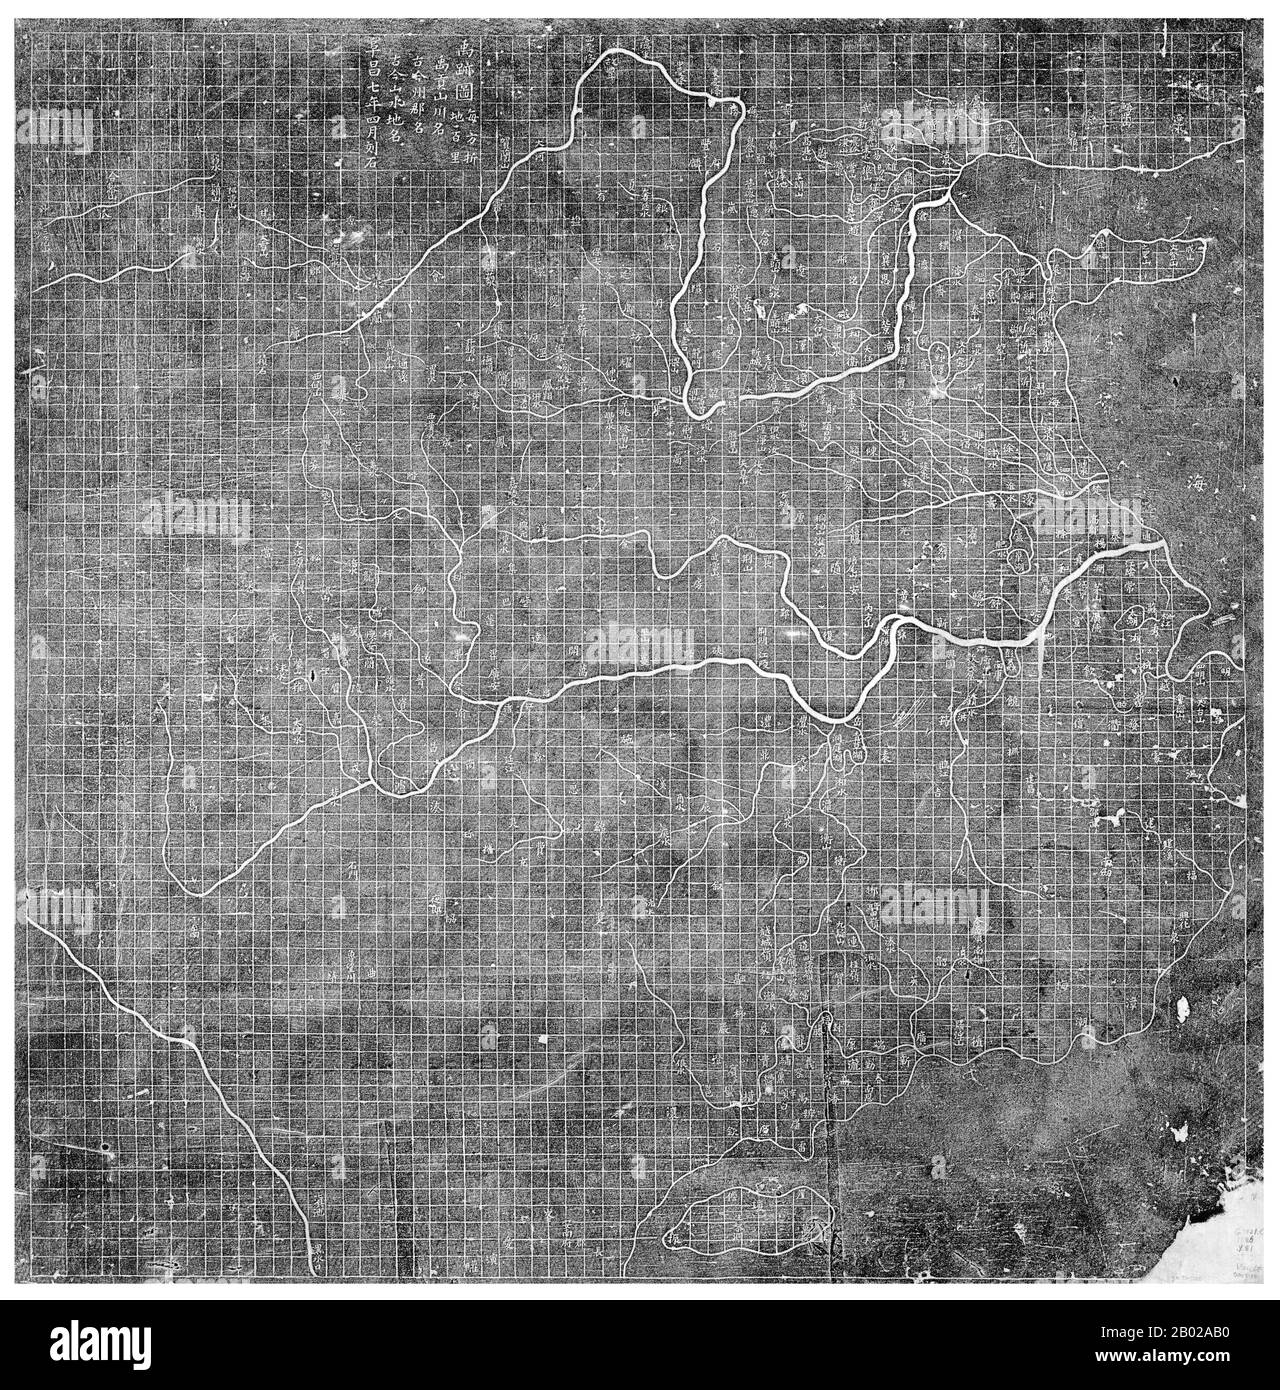 Das Yu Ji TU oder 'Map der Spuren von Yu', das 1137 in Stein gemeißelt wurde, befindet sich im Stele Forest of Beilin Museum in Xi'an. Die 0,91 m (3 ft) quadratische Karte weist ein Raster von 100 li Quadraten auf. Chinas Küsten- und Flusssysteme sind klar definiert und genau auf der Karte eingezeichnet. "Yu" bezieht sich auf Yu Gong (Yu der Große), eine chinesische Gottheit, die im geographischen Kapitel der klassischen Geschichte vom 5. Jahrhundert v. Chr. beschrieben wurde. Stockfoto